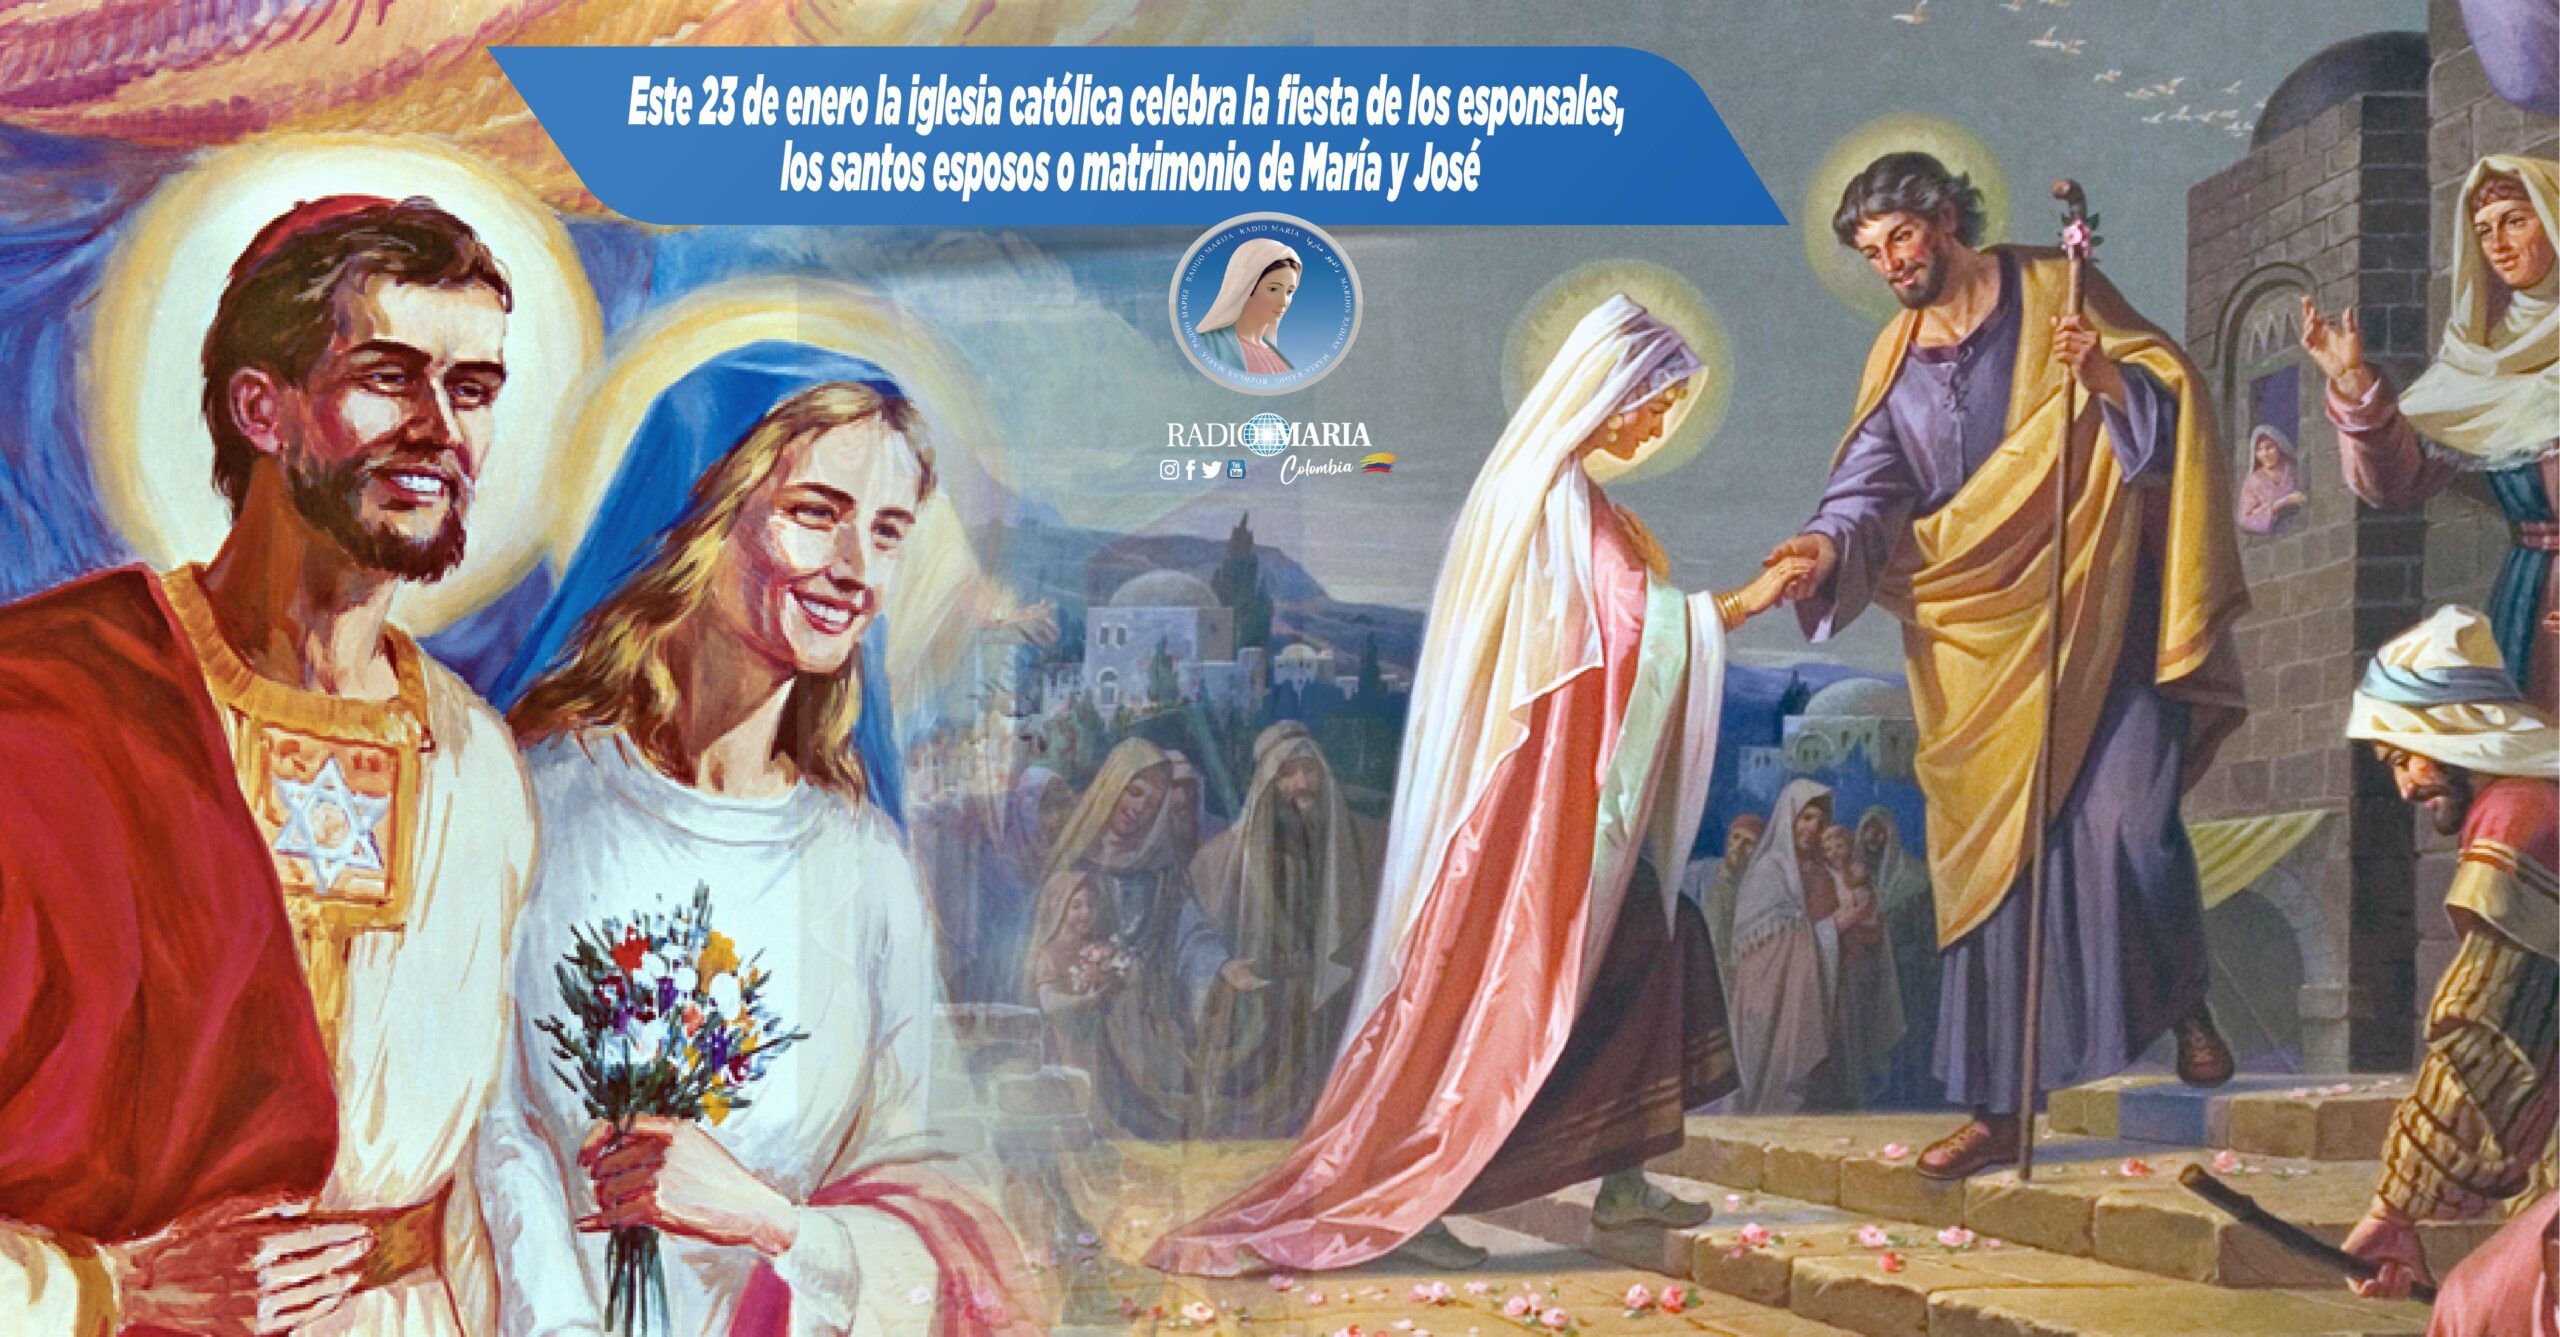 Sabías que este 23 de enero la iglesia católica celebra también la fiesta  de los esponsales, los santos esposos o matrimonio de María y José